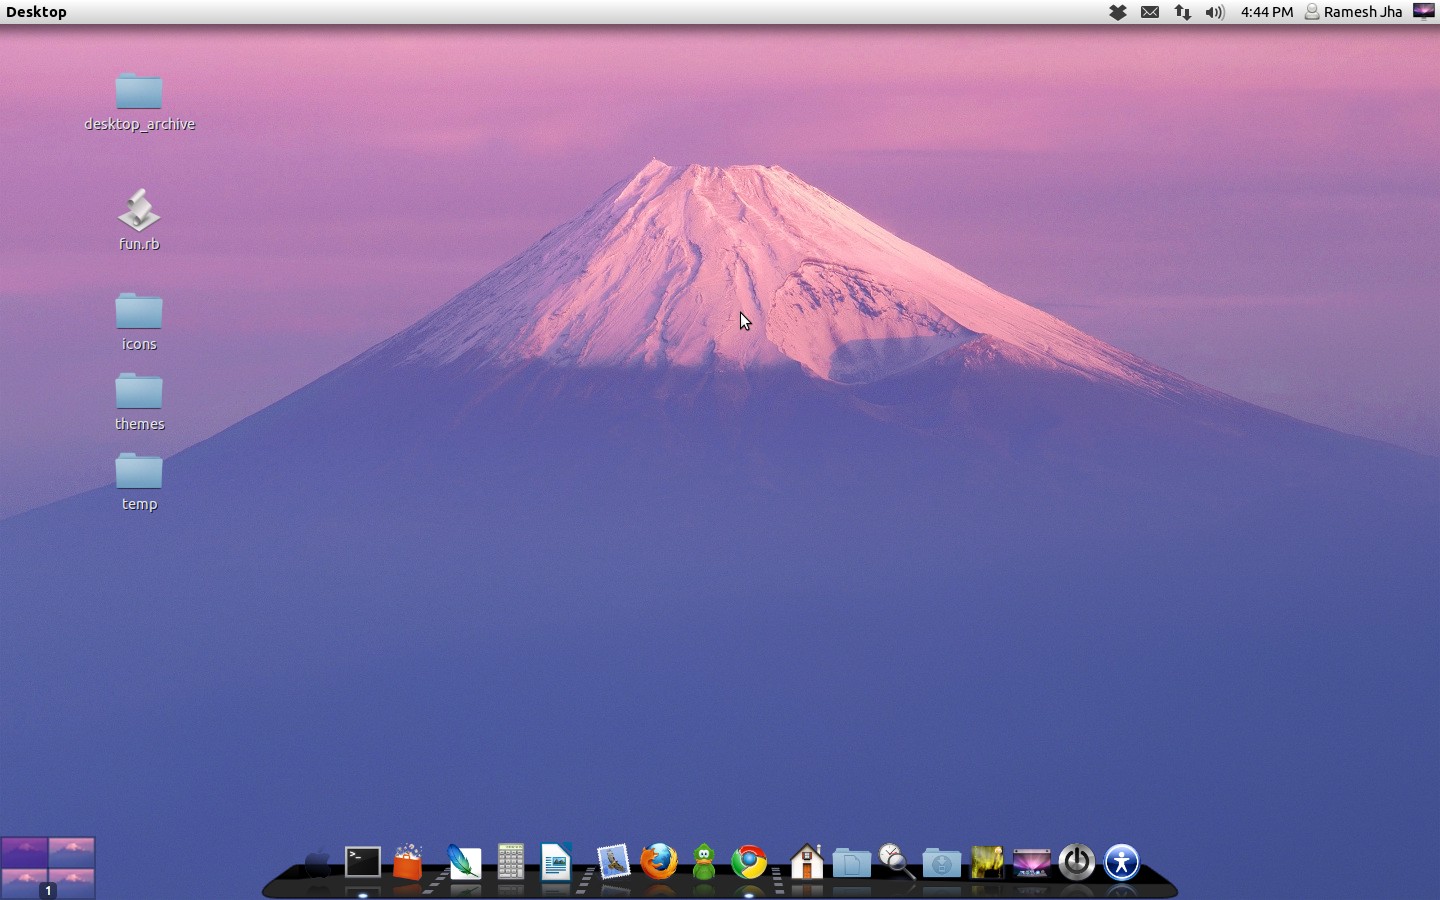 MAC OS X LION THEME FOR UBUNTU 12.04 PRECISE PANGOLIN/UBUNTU 12.10 QUANTAL  QUETZAL/LINUX MINT 13